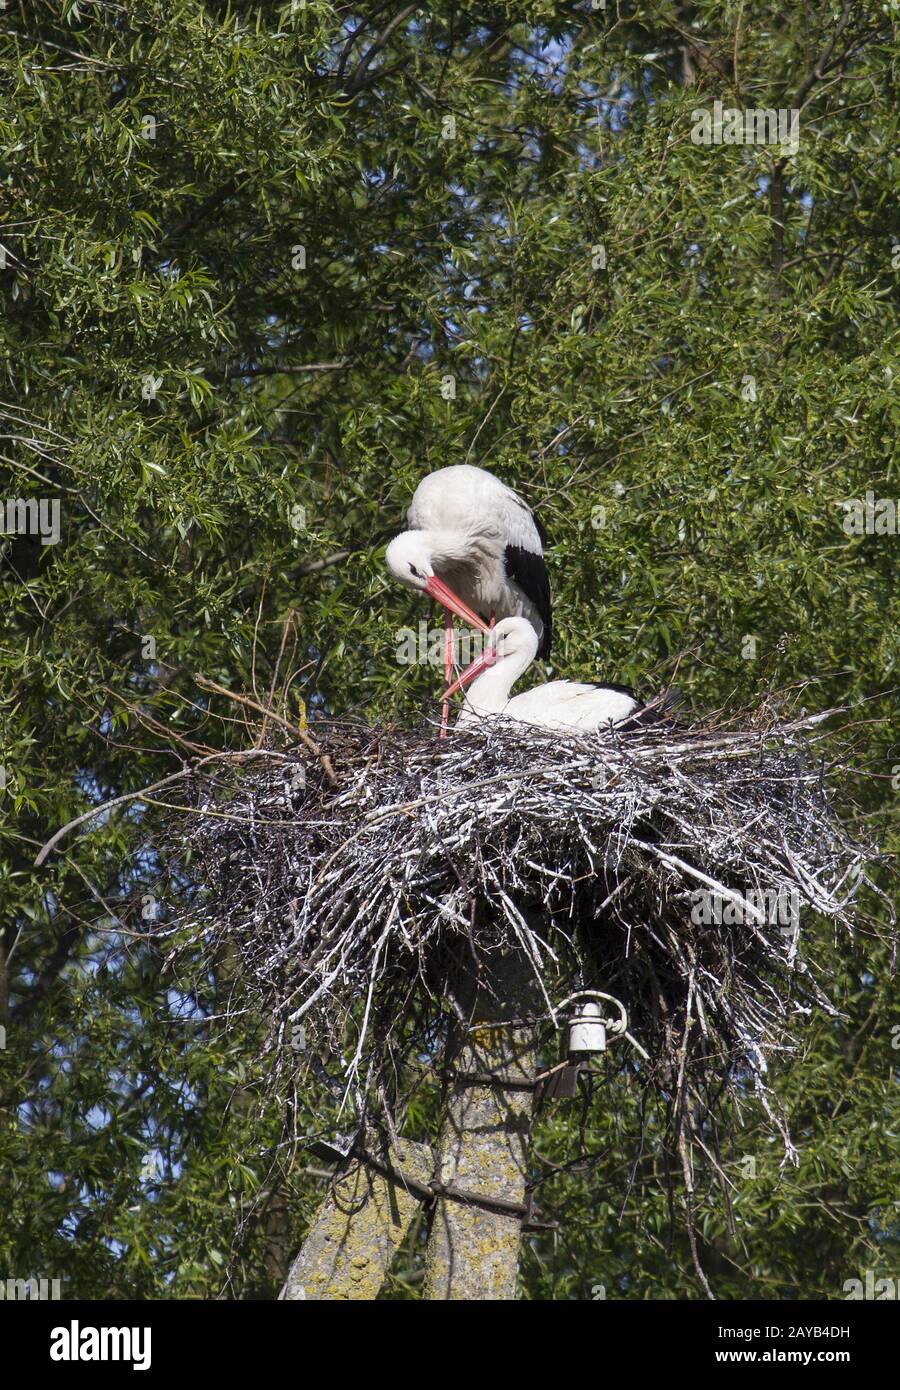 White Stork, Ventės ragas, Lithuania, East Europe, Baltic States Stock Photo